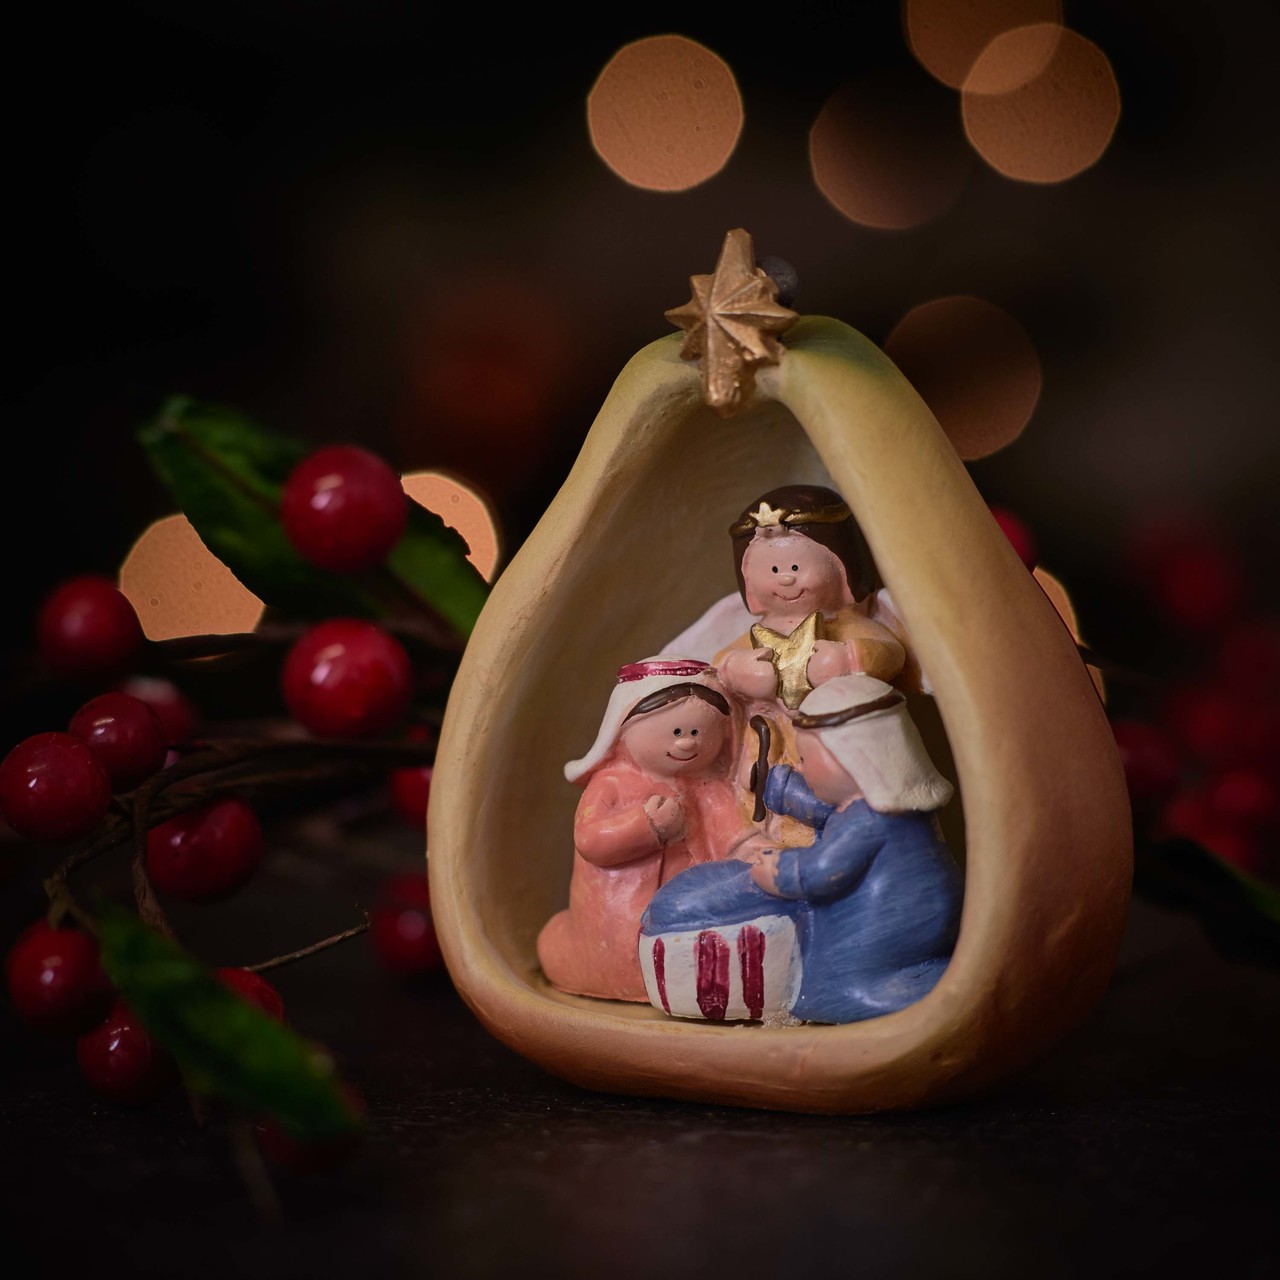 Nativity fruits mix – Pear